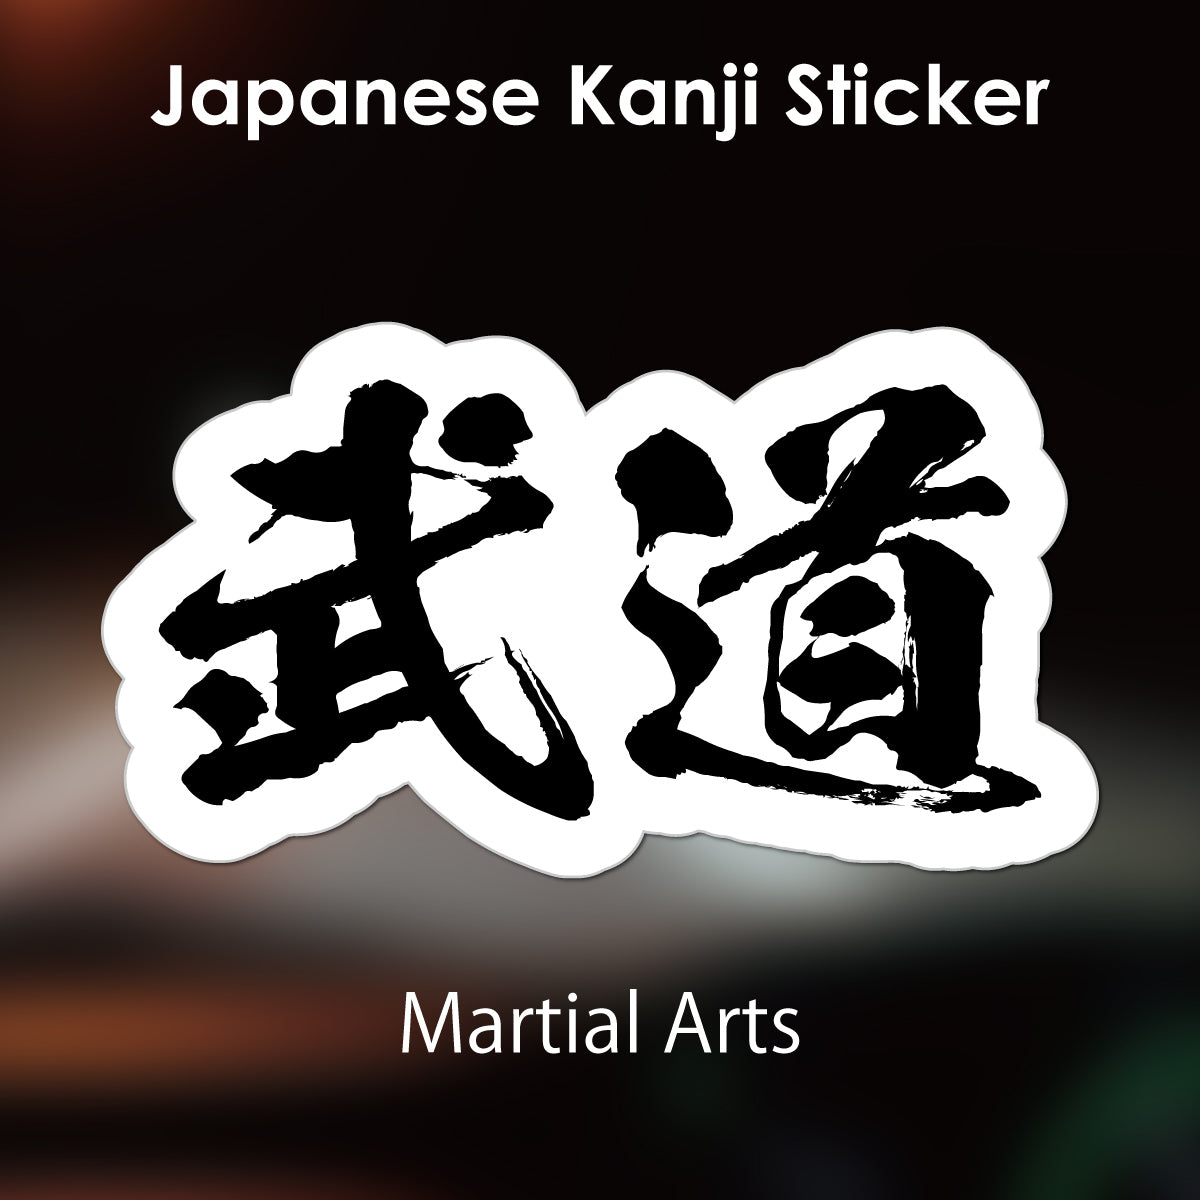 Japanese Kanji Sticker "Budo/Martial Arts" outlined shape PVC 10.6x6cm original design from Japan Retro